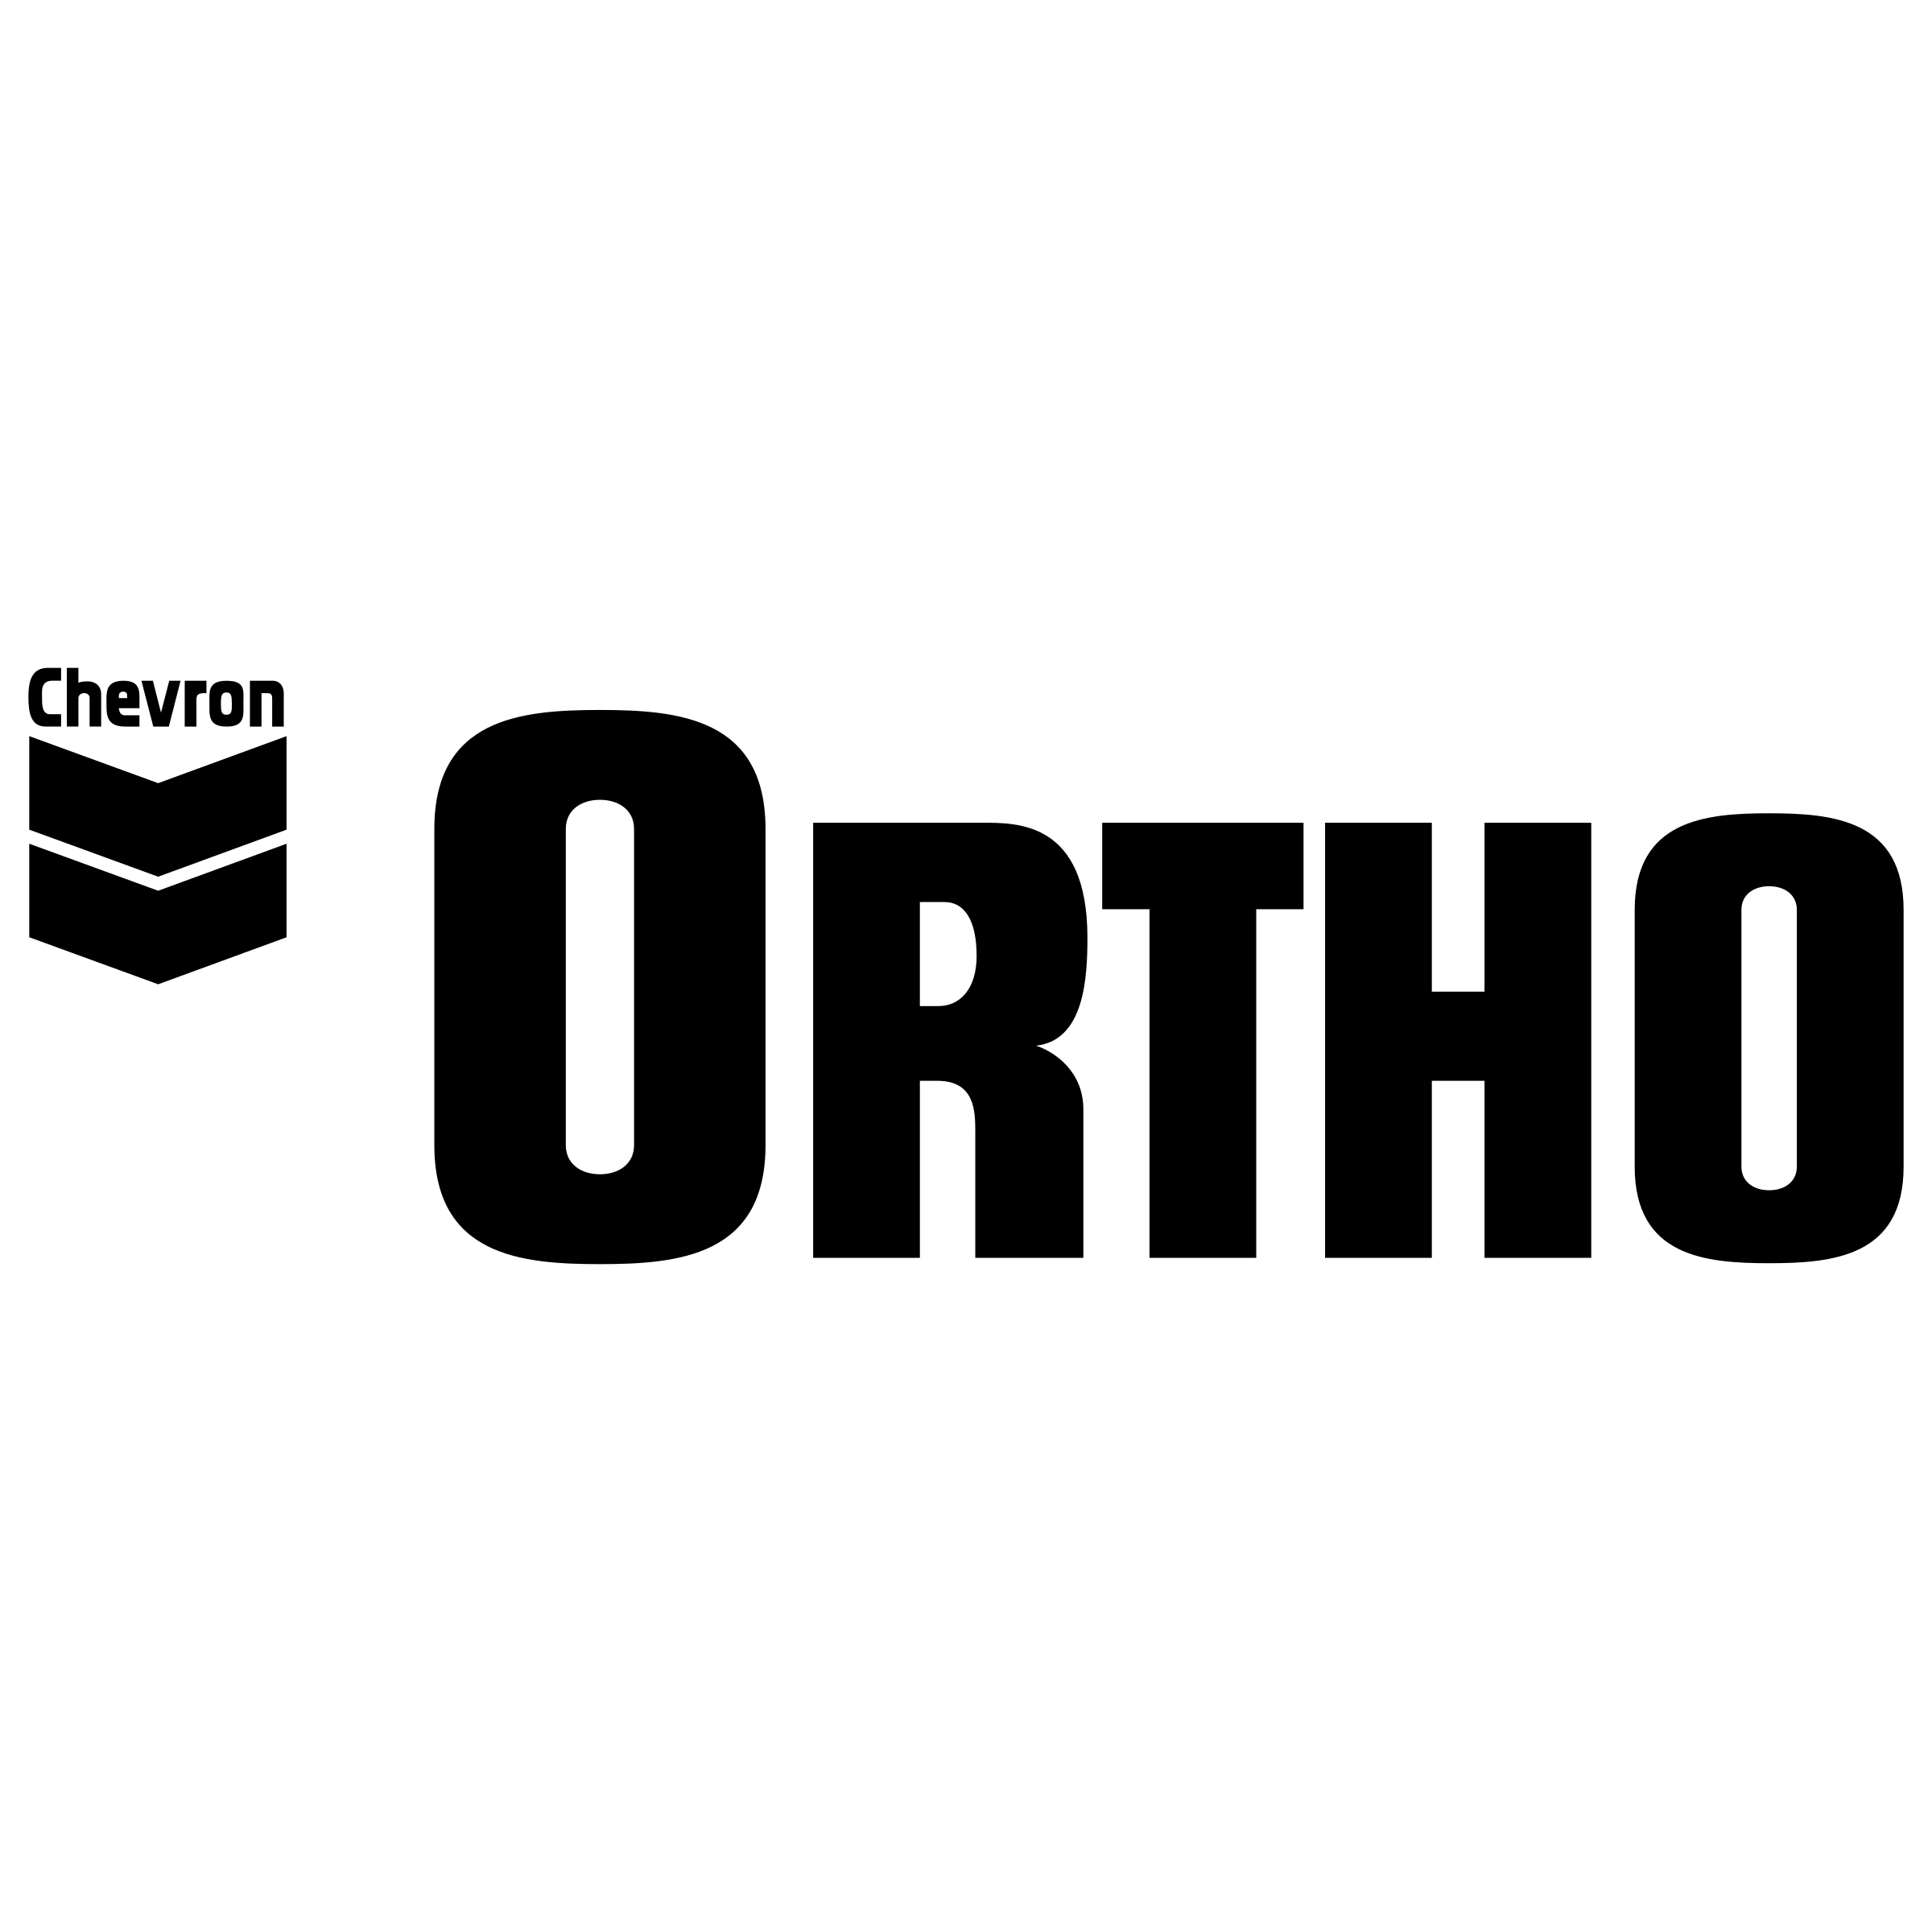 Ortho Logo - Ortho Logo PNG Transparent & SVG Vector